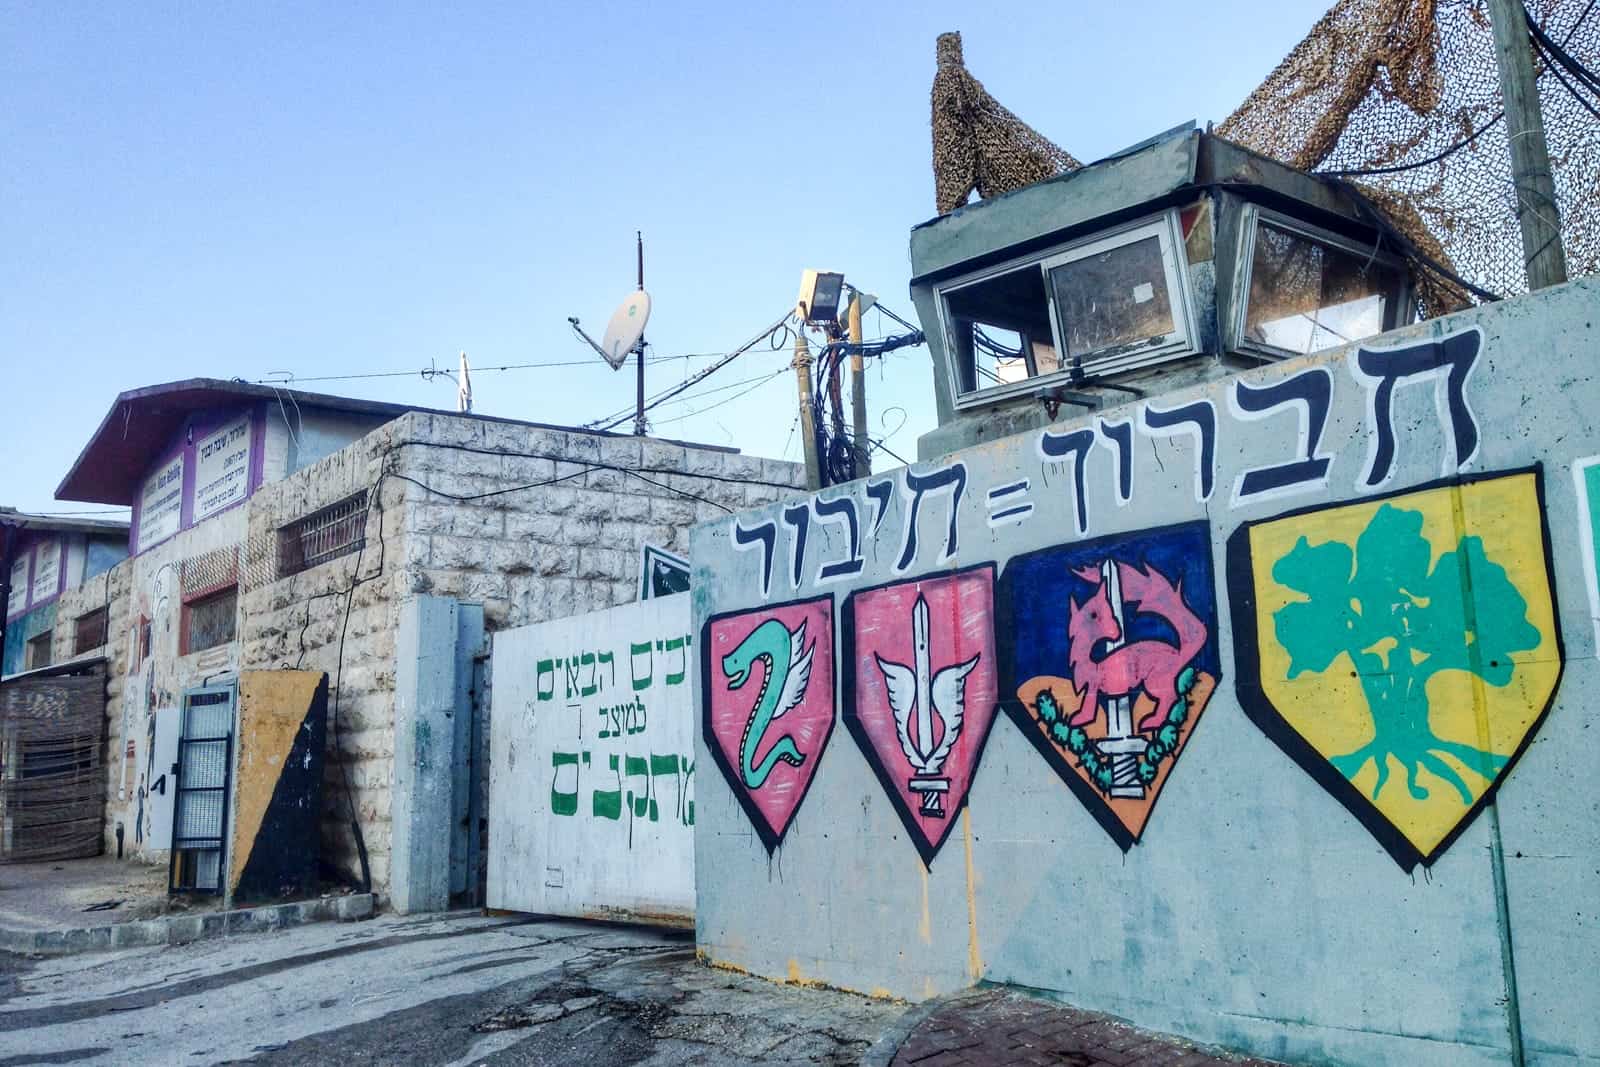 Israeli army building in Hebron, West Bank, Palestine